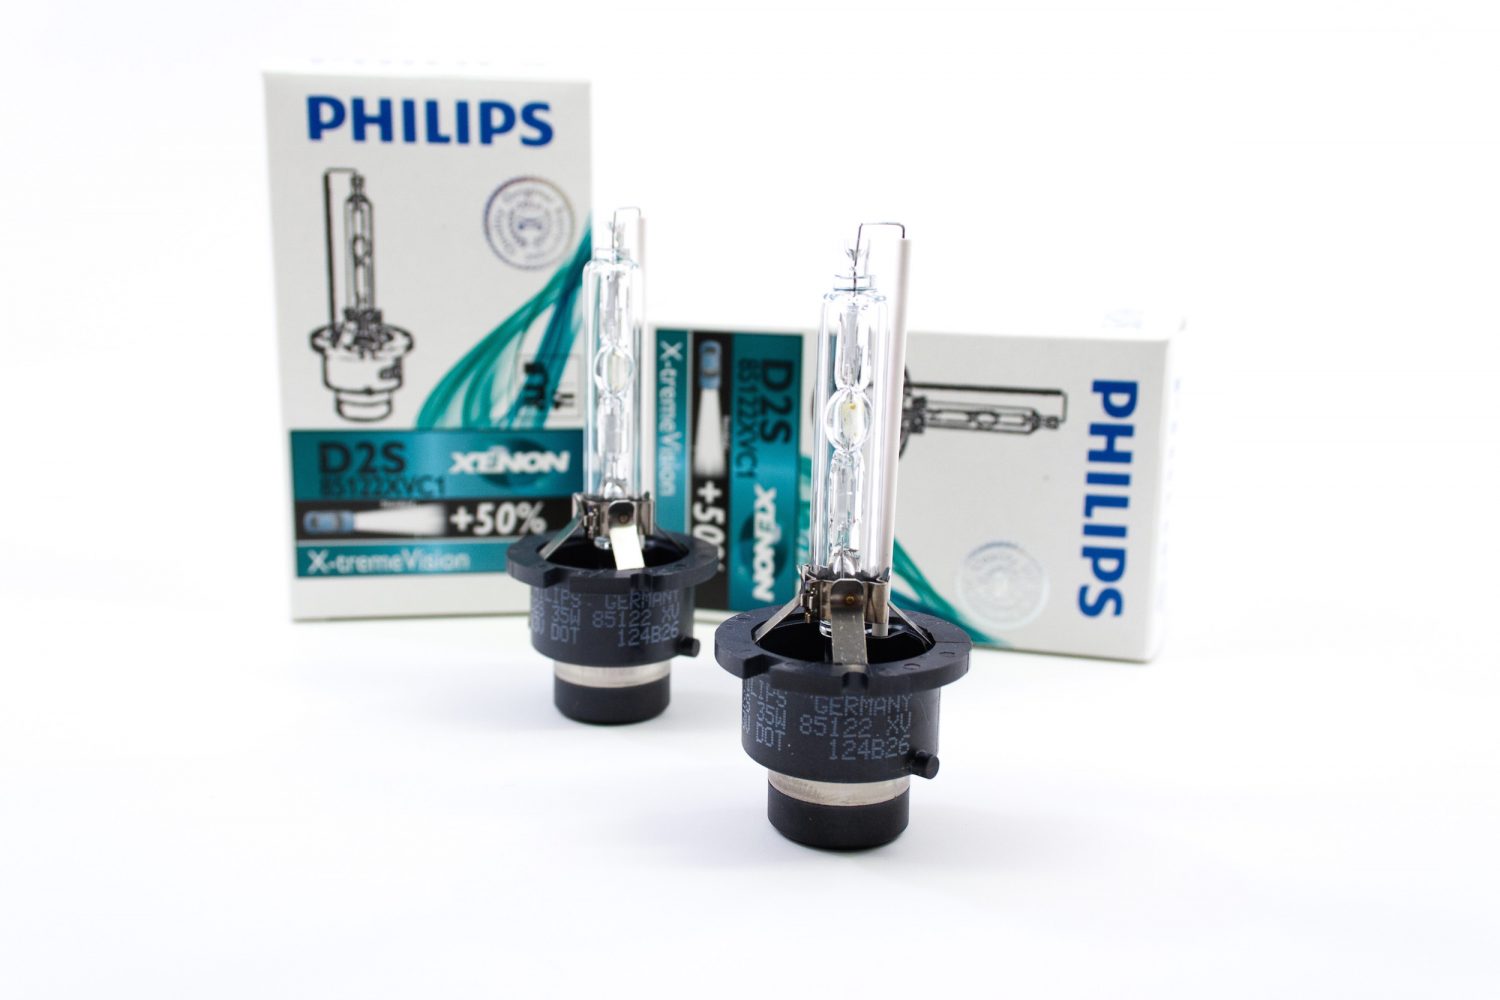 Philips-85122-XV-5000K-D2S-HID-Headlight-Bulbs-1